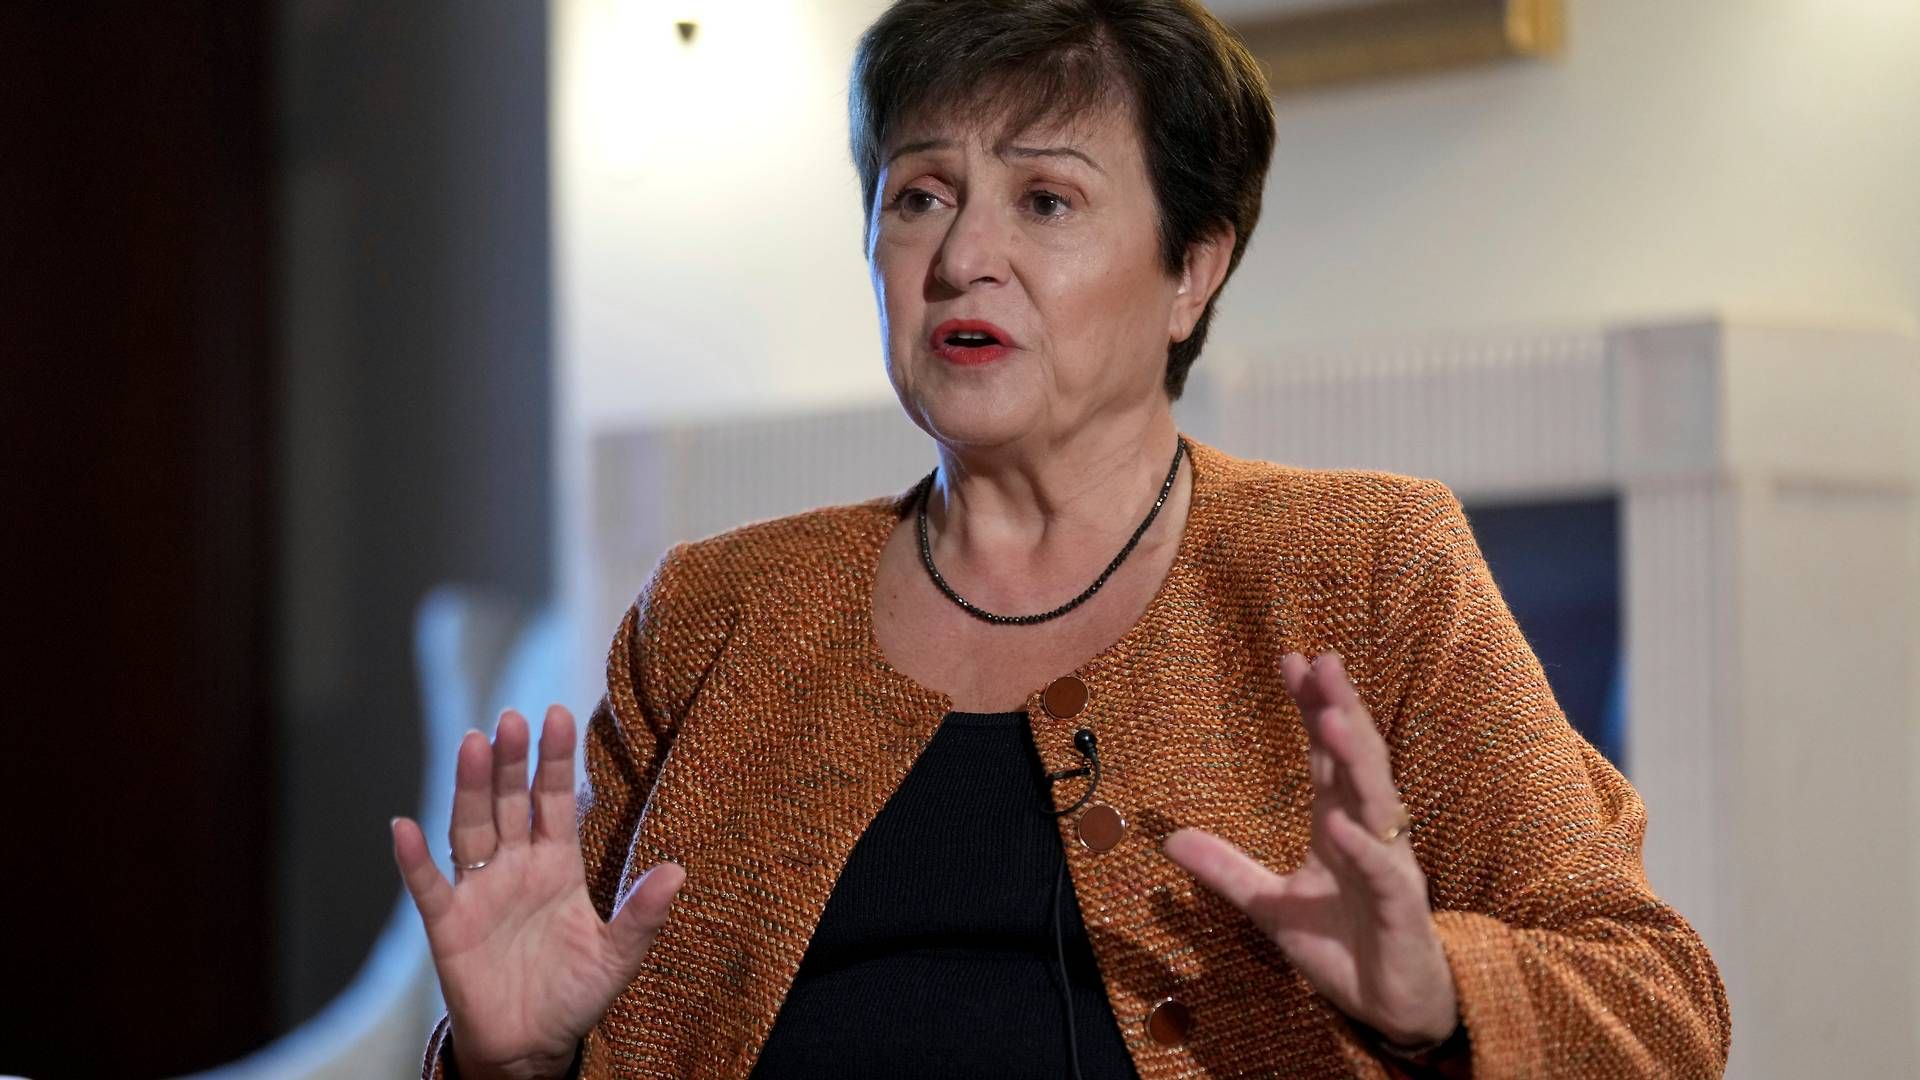 BER KINA ENDRE POLITIKK: IMF-direktør Kristalina Georgieva anmoder Kina om å tilpasse den overordnede tilnærmingen til hvordan forsyningskjedene blir påvirket | Foto: AP Photo/Michael Sohn